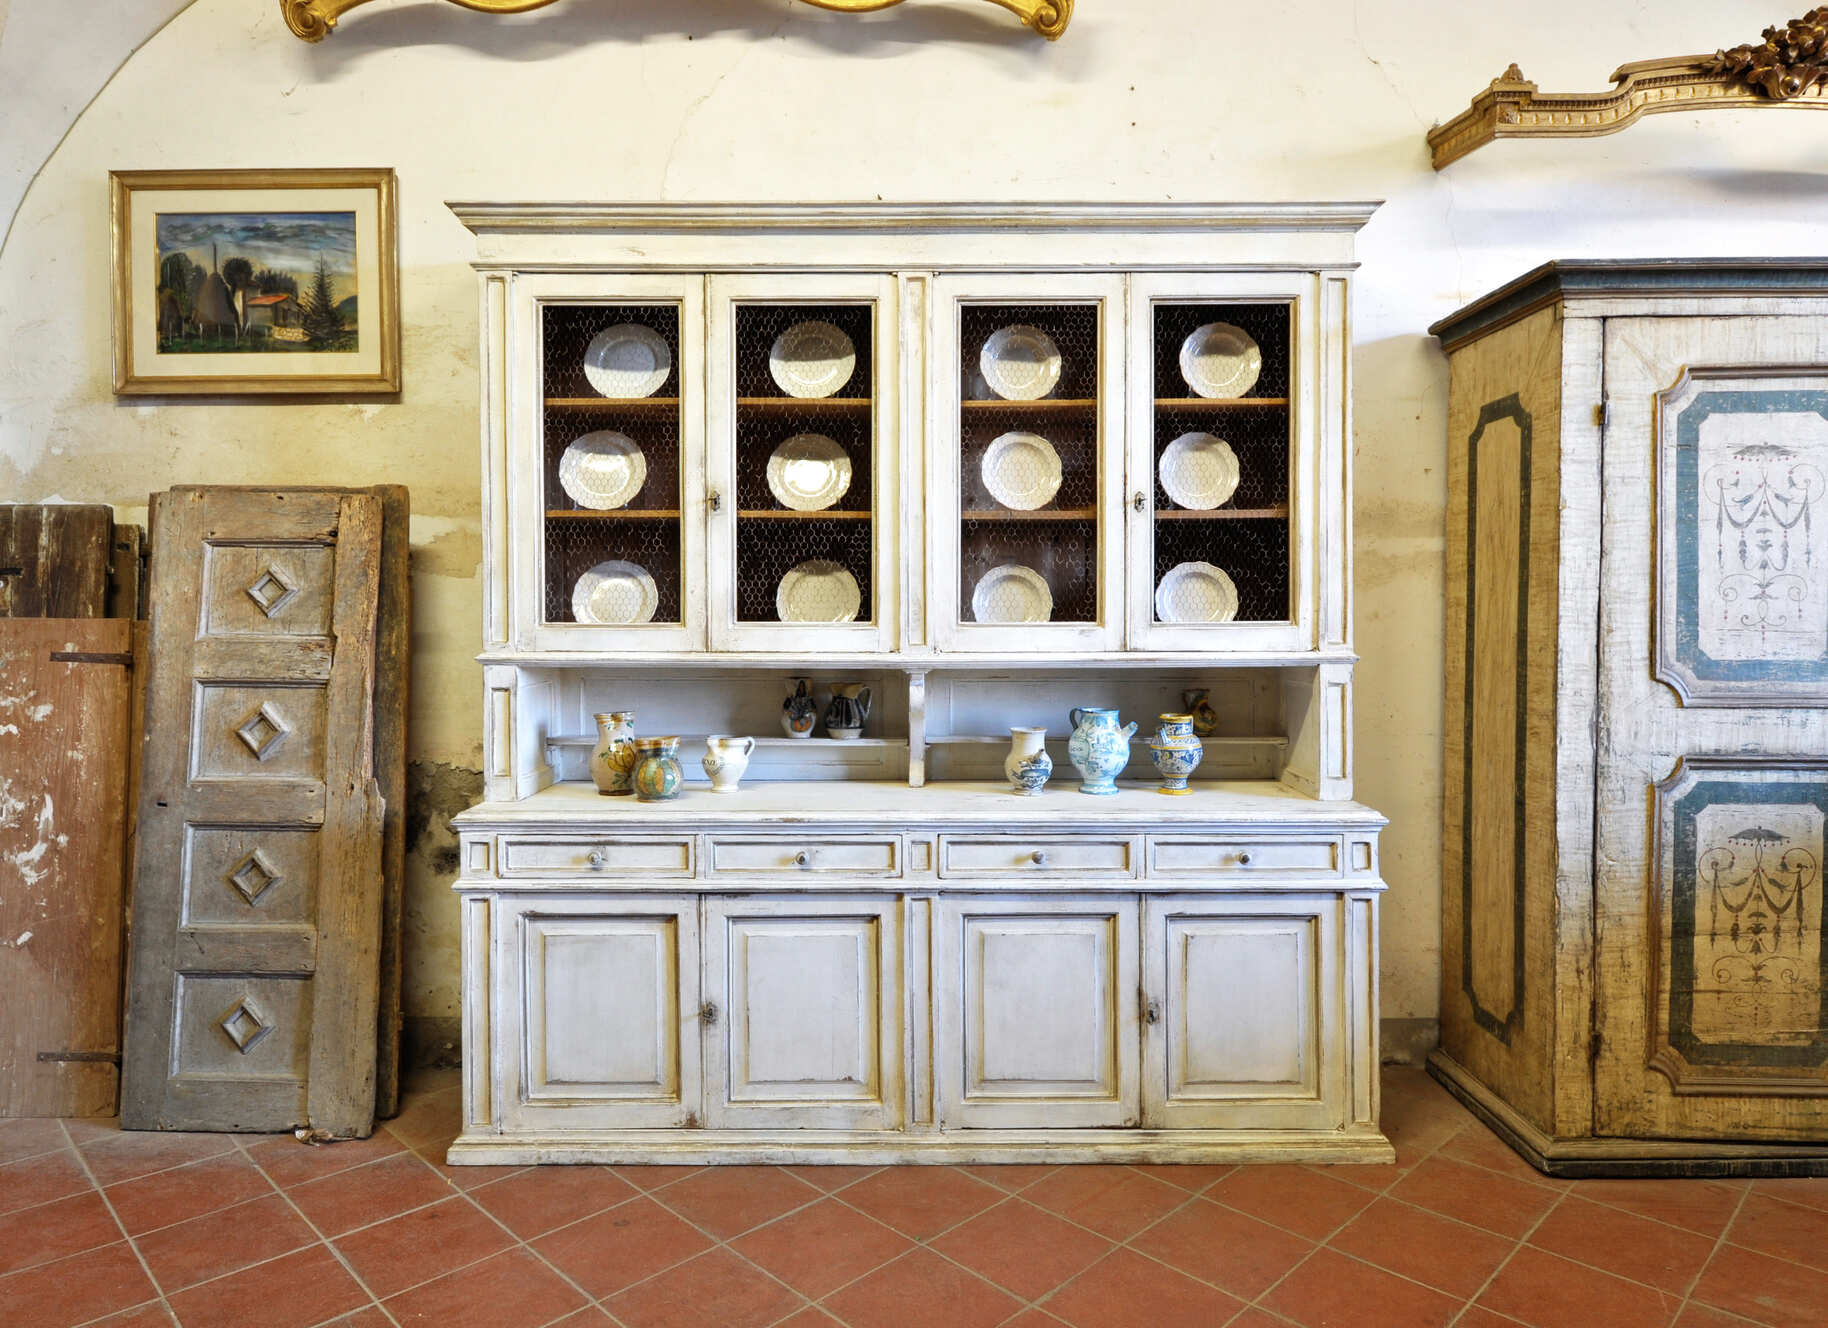 Giuseppe Margheri, Antique Furniture and Restoration Workshop